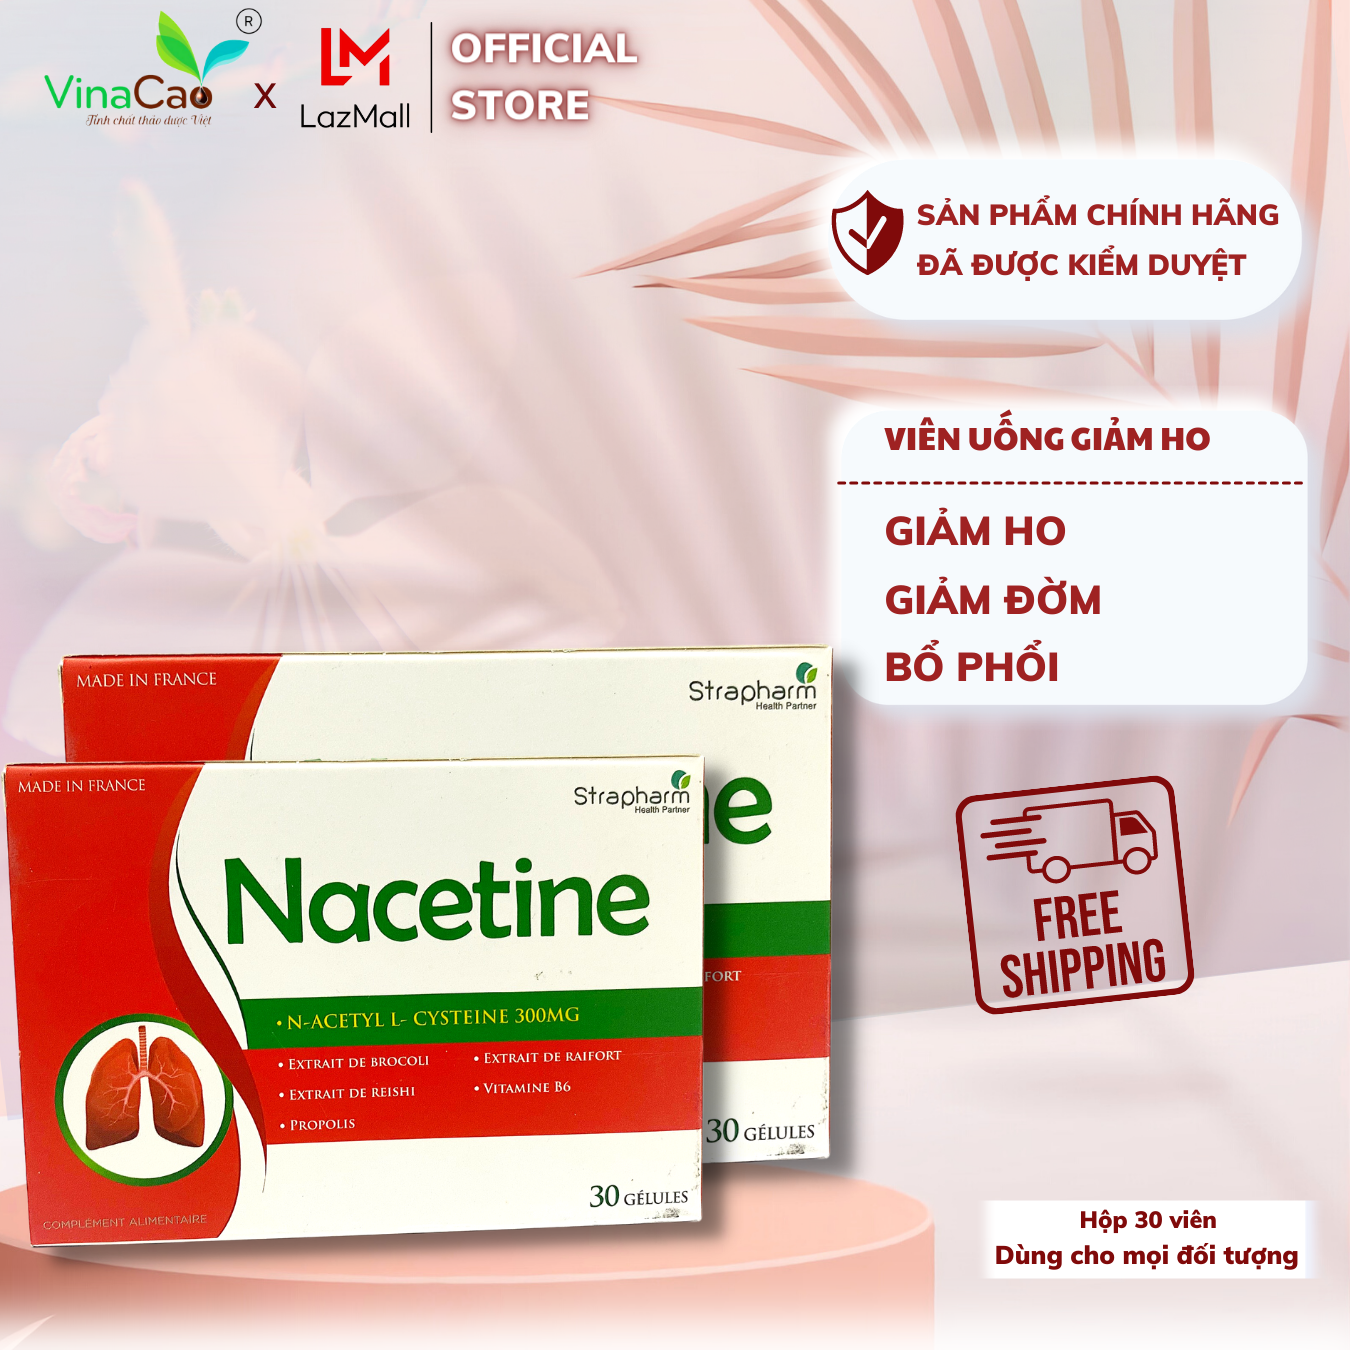 Viên uống Nacetine hỗ trợ giảm ho, giảm đờm, tăng cường chức năng phổi